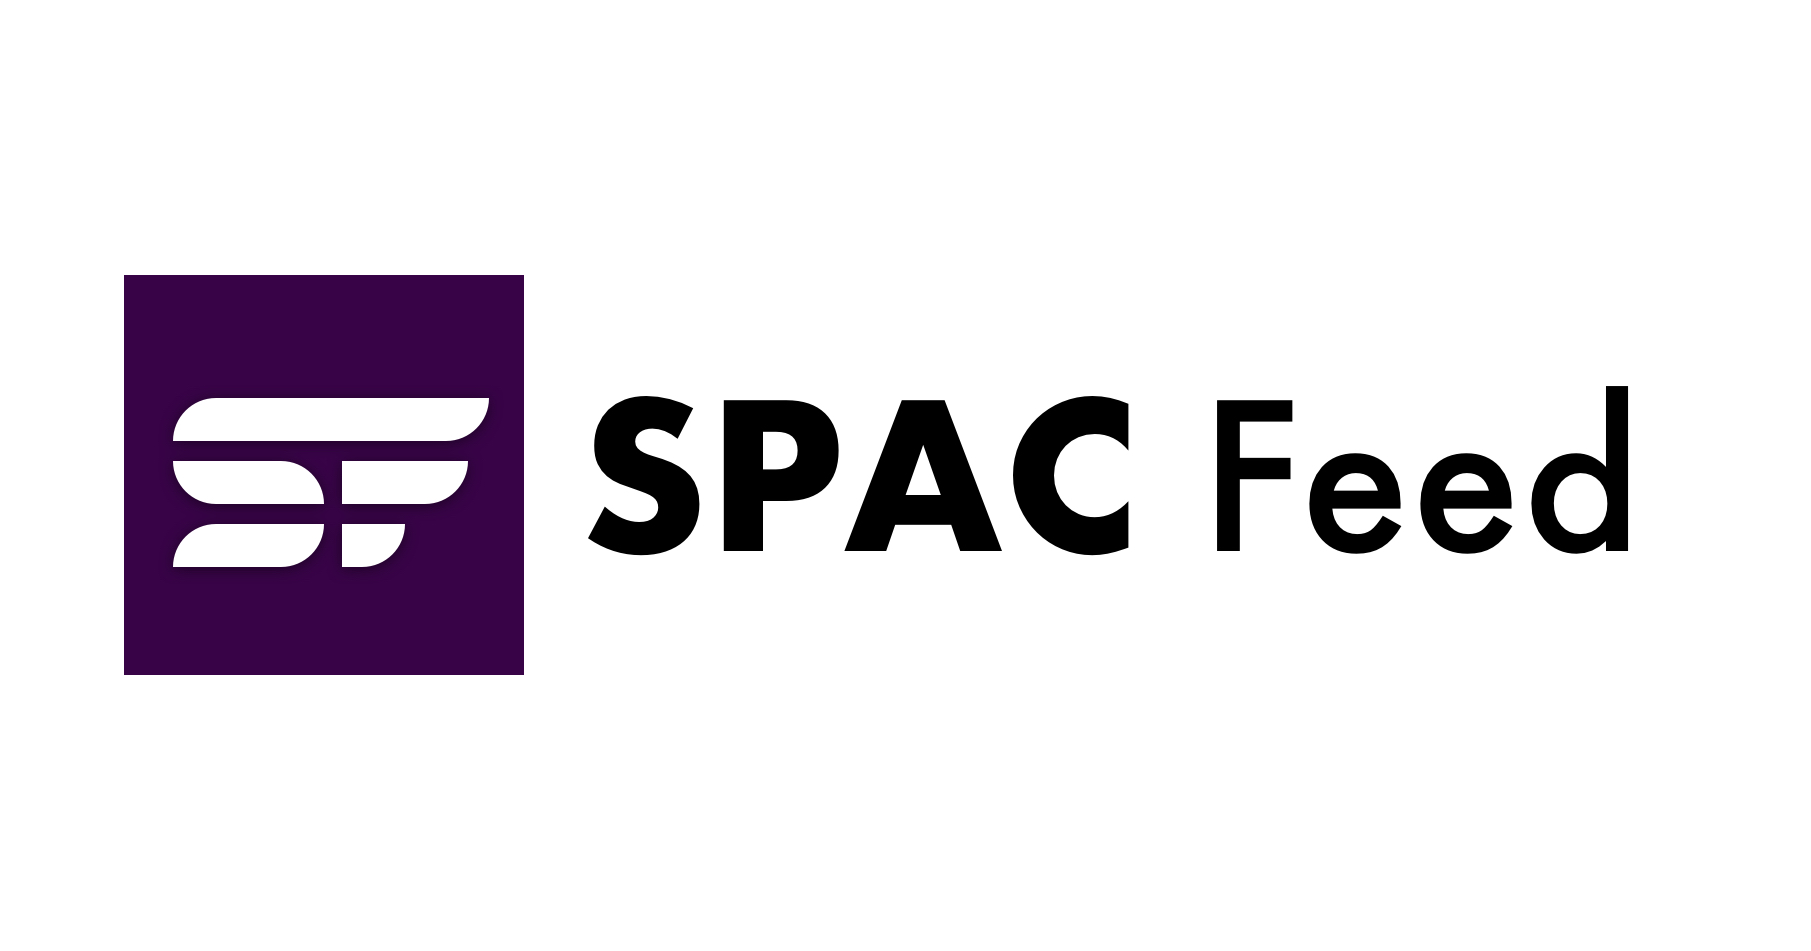 নিউইয়র্কের সাউদার্ন ডিস্ট্রিক্ট SPAC মার্জার থেকে উদ্ভূত পুটিটিভ ক্লাস অ্যাকশন খারিজ করে, যে বাদীদের স্থায়ীত্বের অভাব ছিল